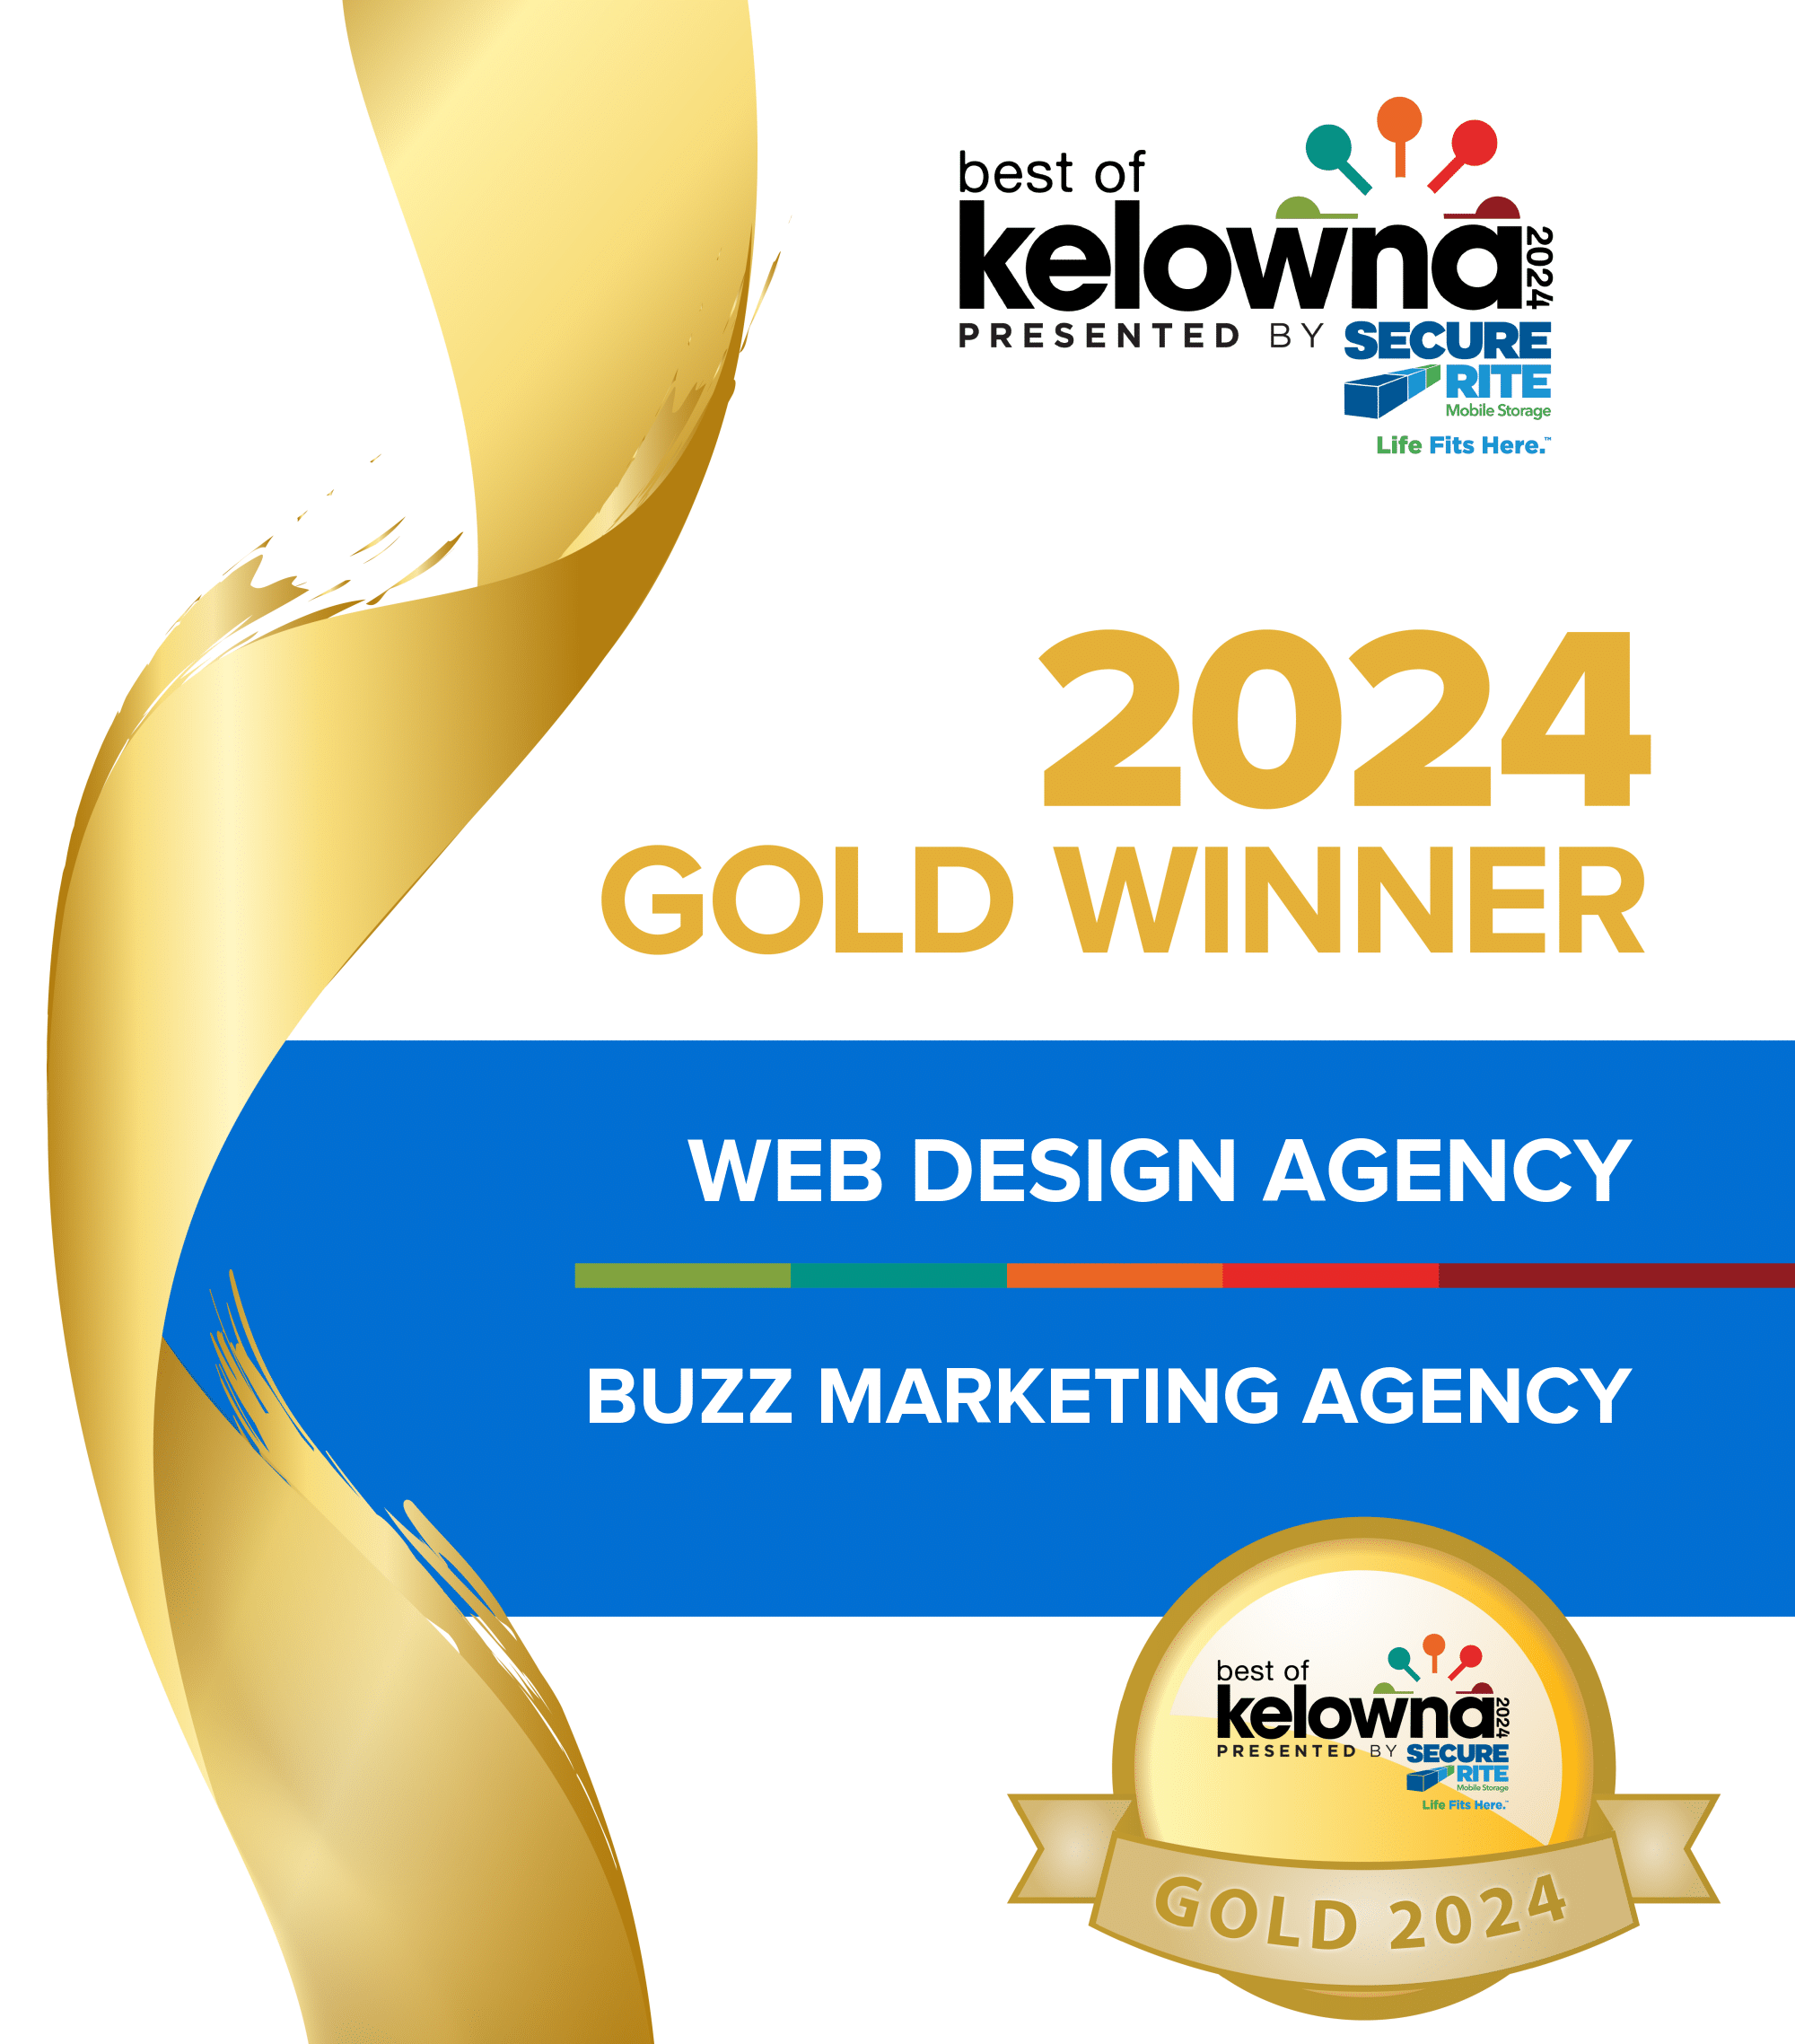 Buzz marketing best of kelowna web design agency gold winner certificate